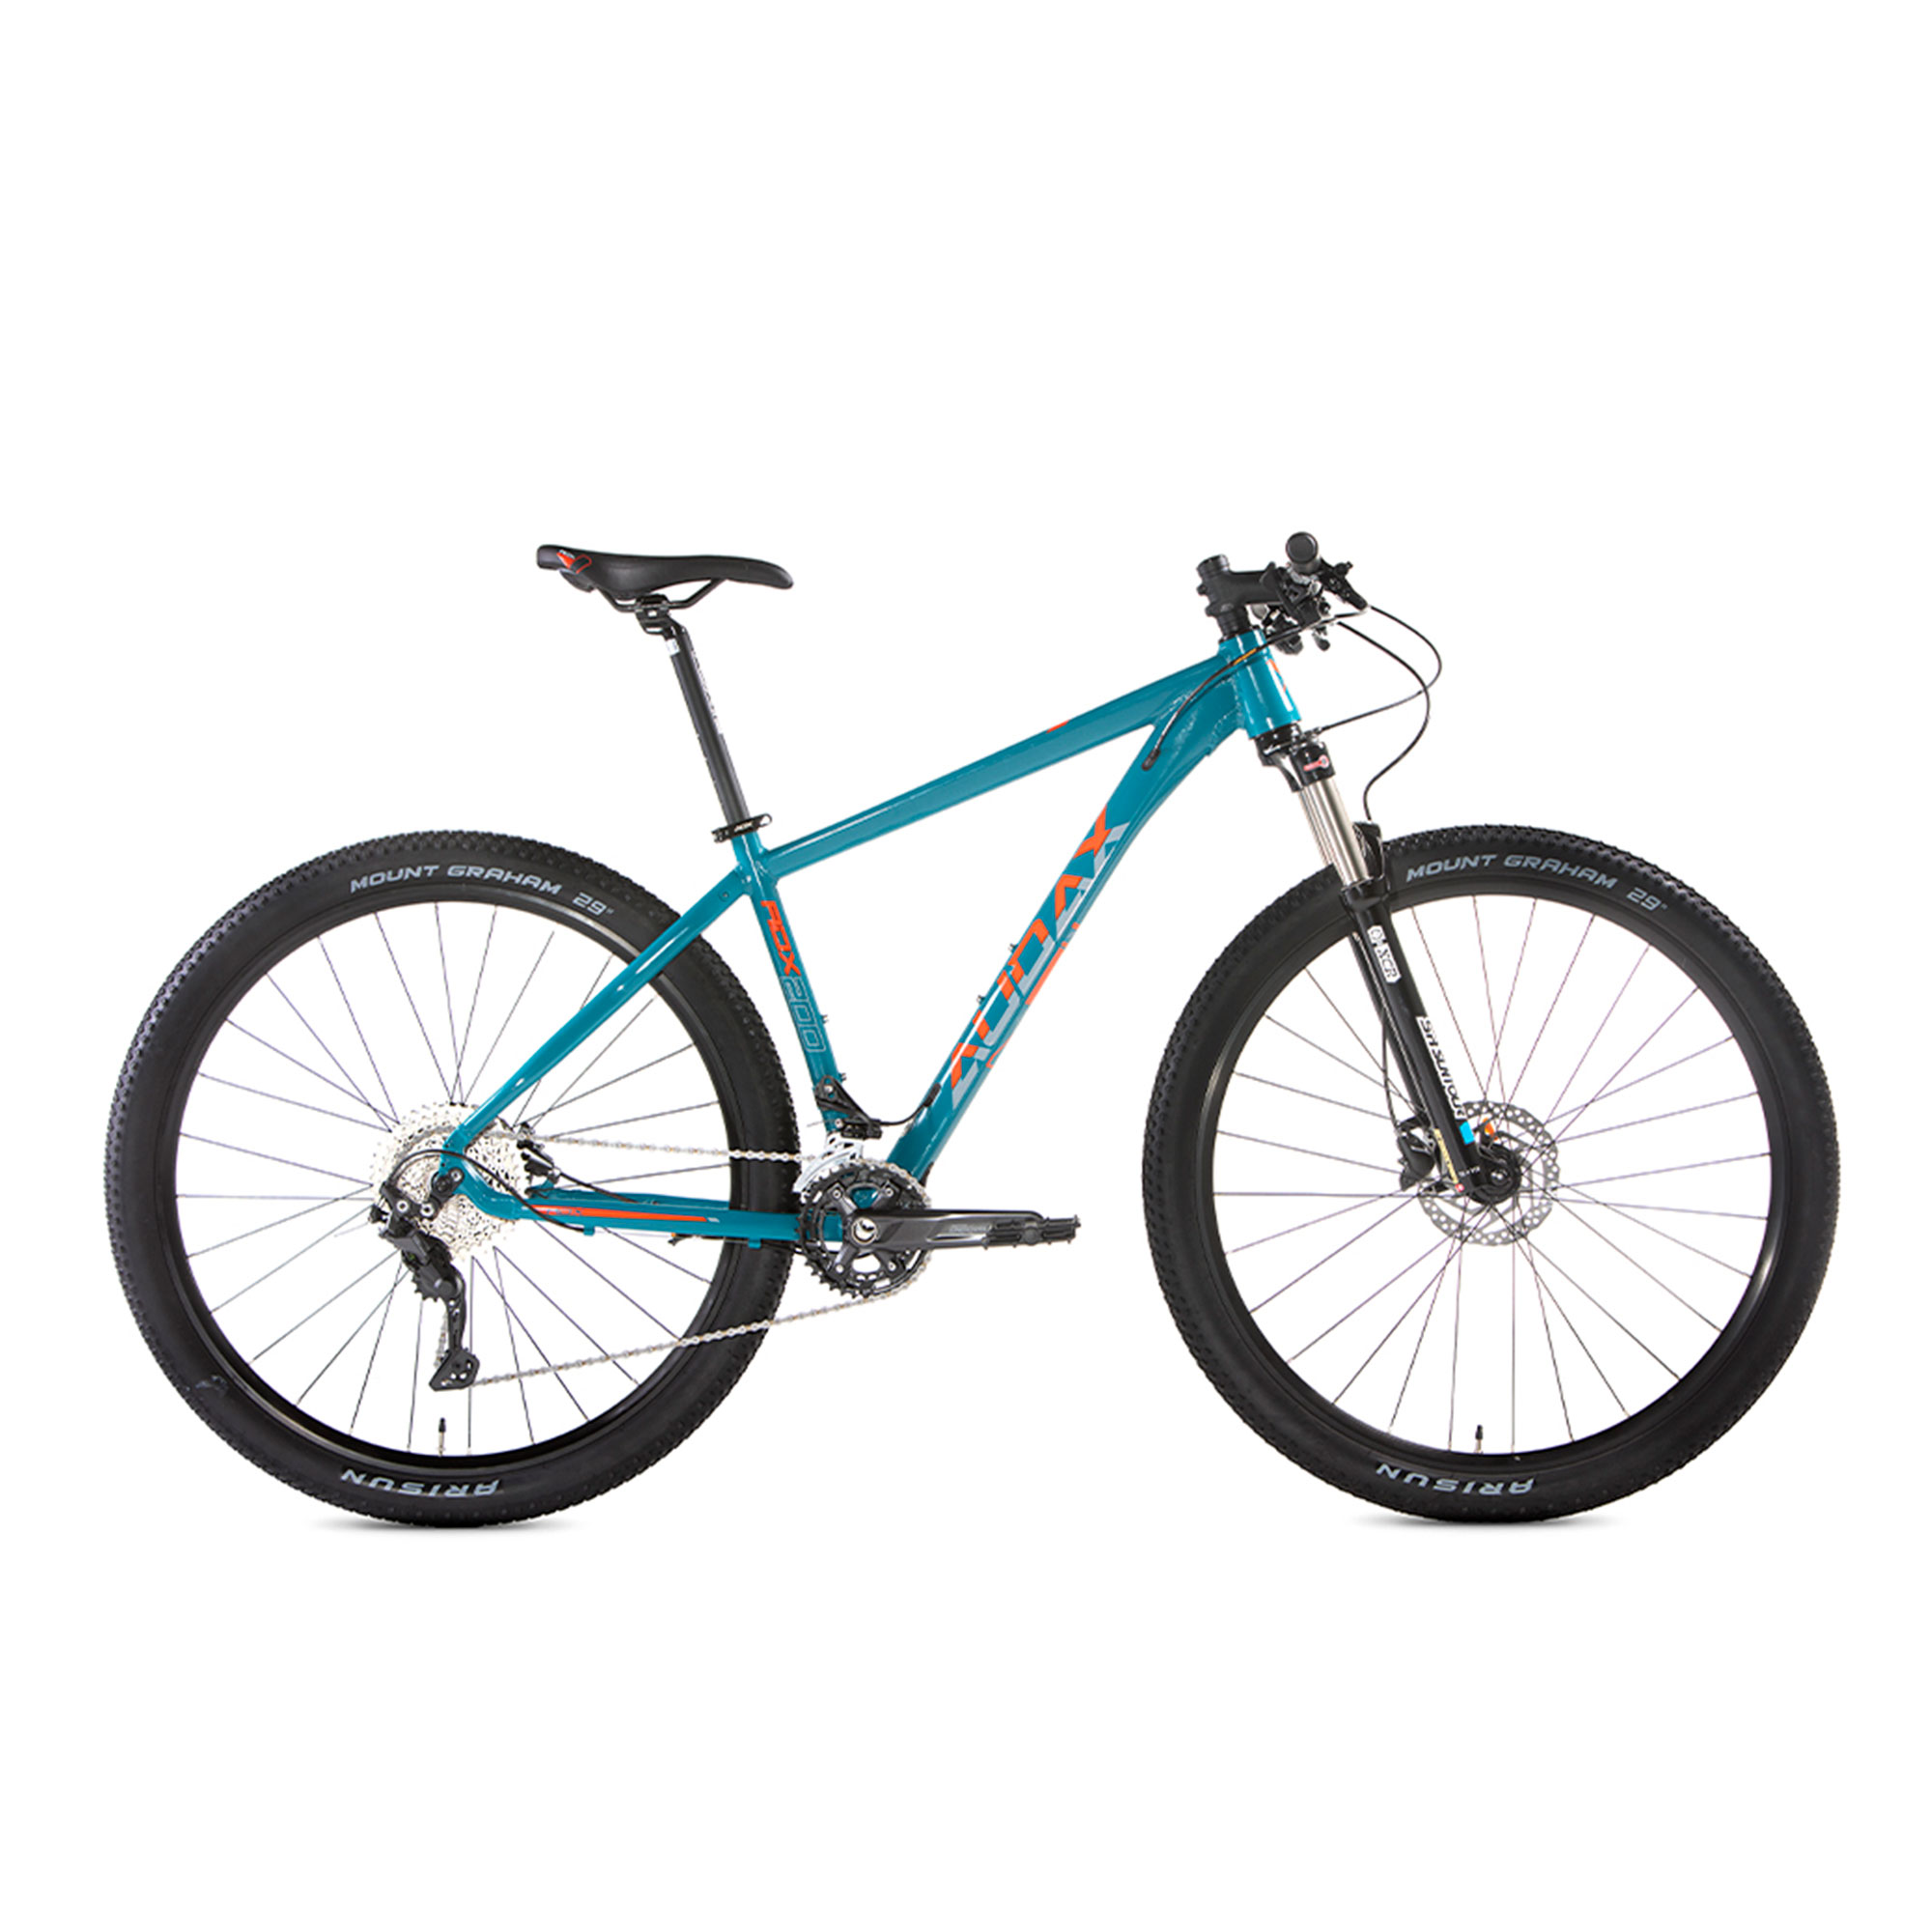 Bicicleta Audax ADX 200 Deore 2x10 Aro 29 2021/22